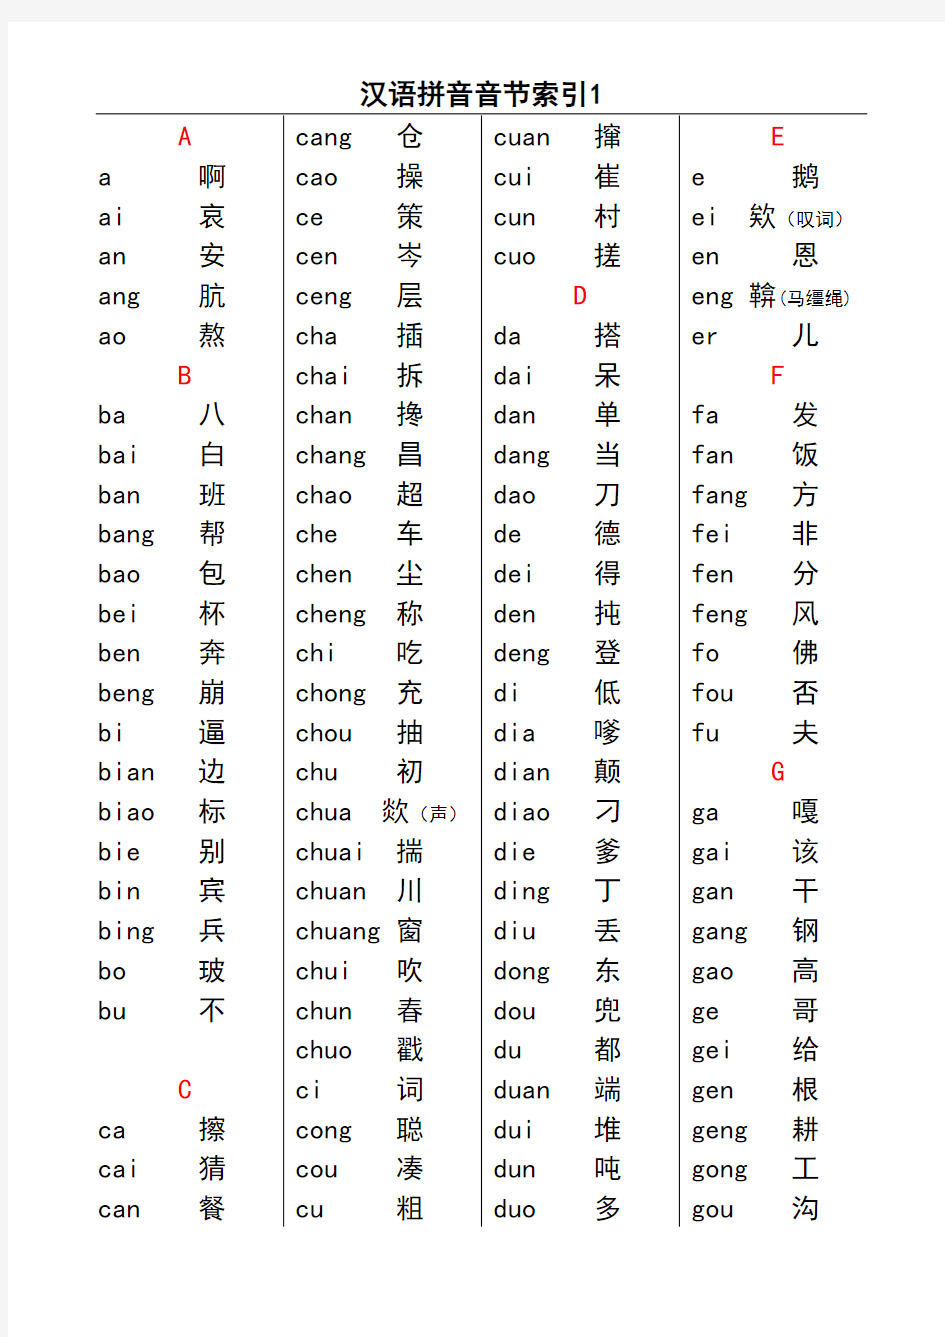 汉语拼音音节索引表(无错误版)